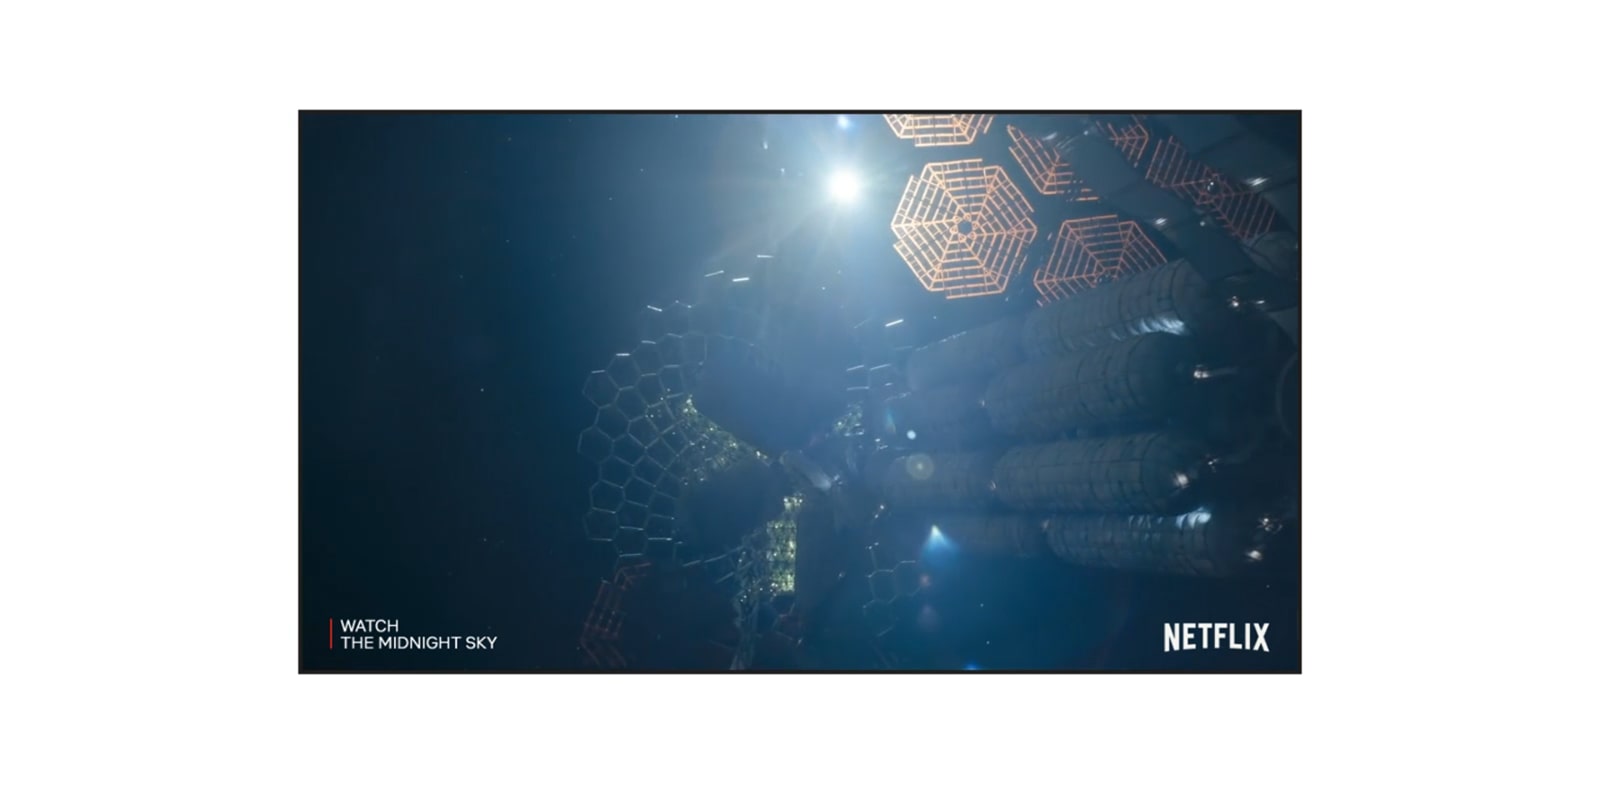 Un écran de téléviseur qui montre la bande-annonce de Minuit dans l’univers sur Netflix (lire la vidéo).